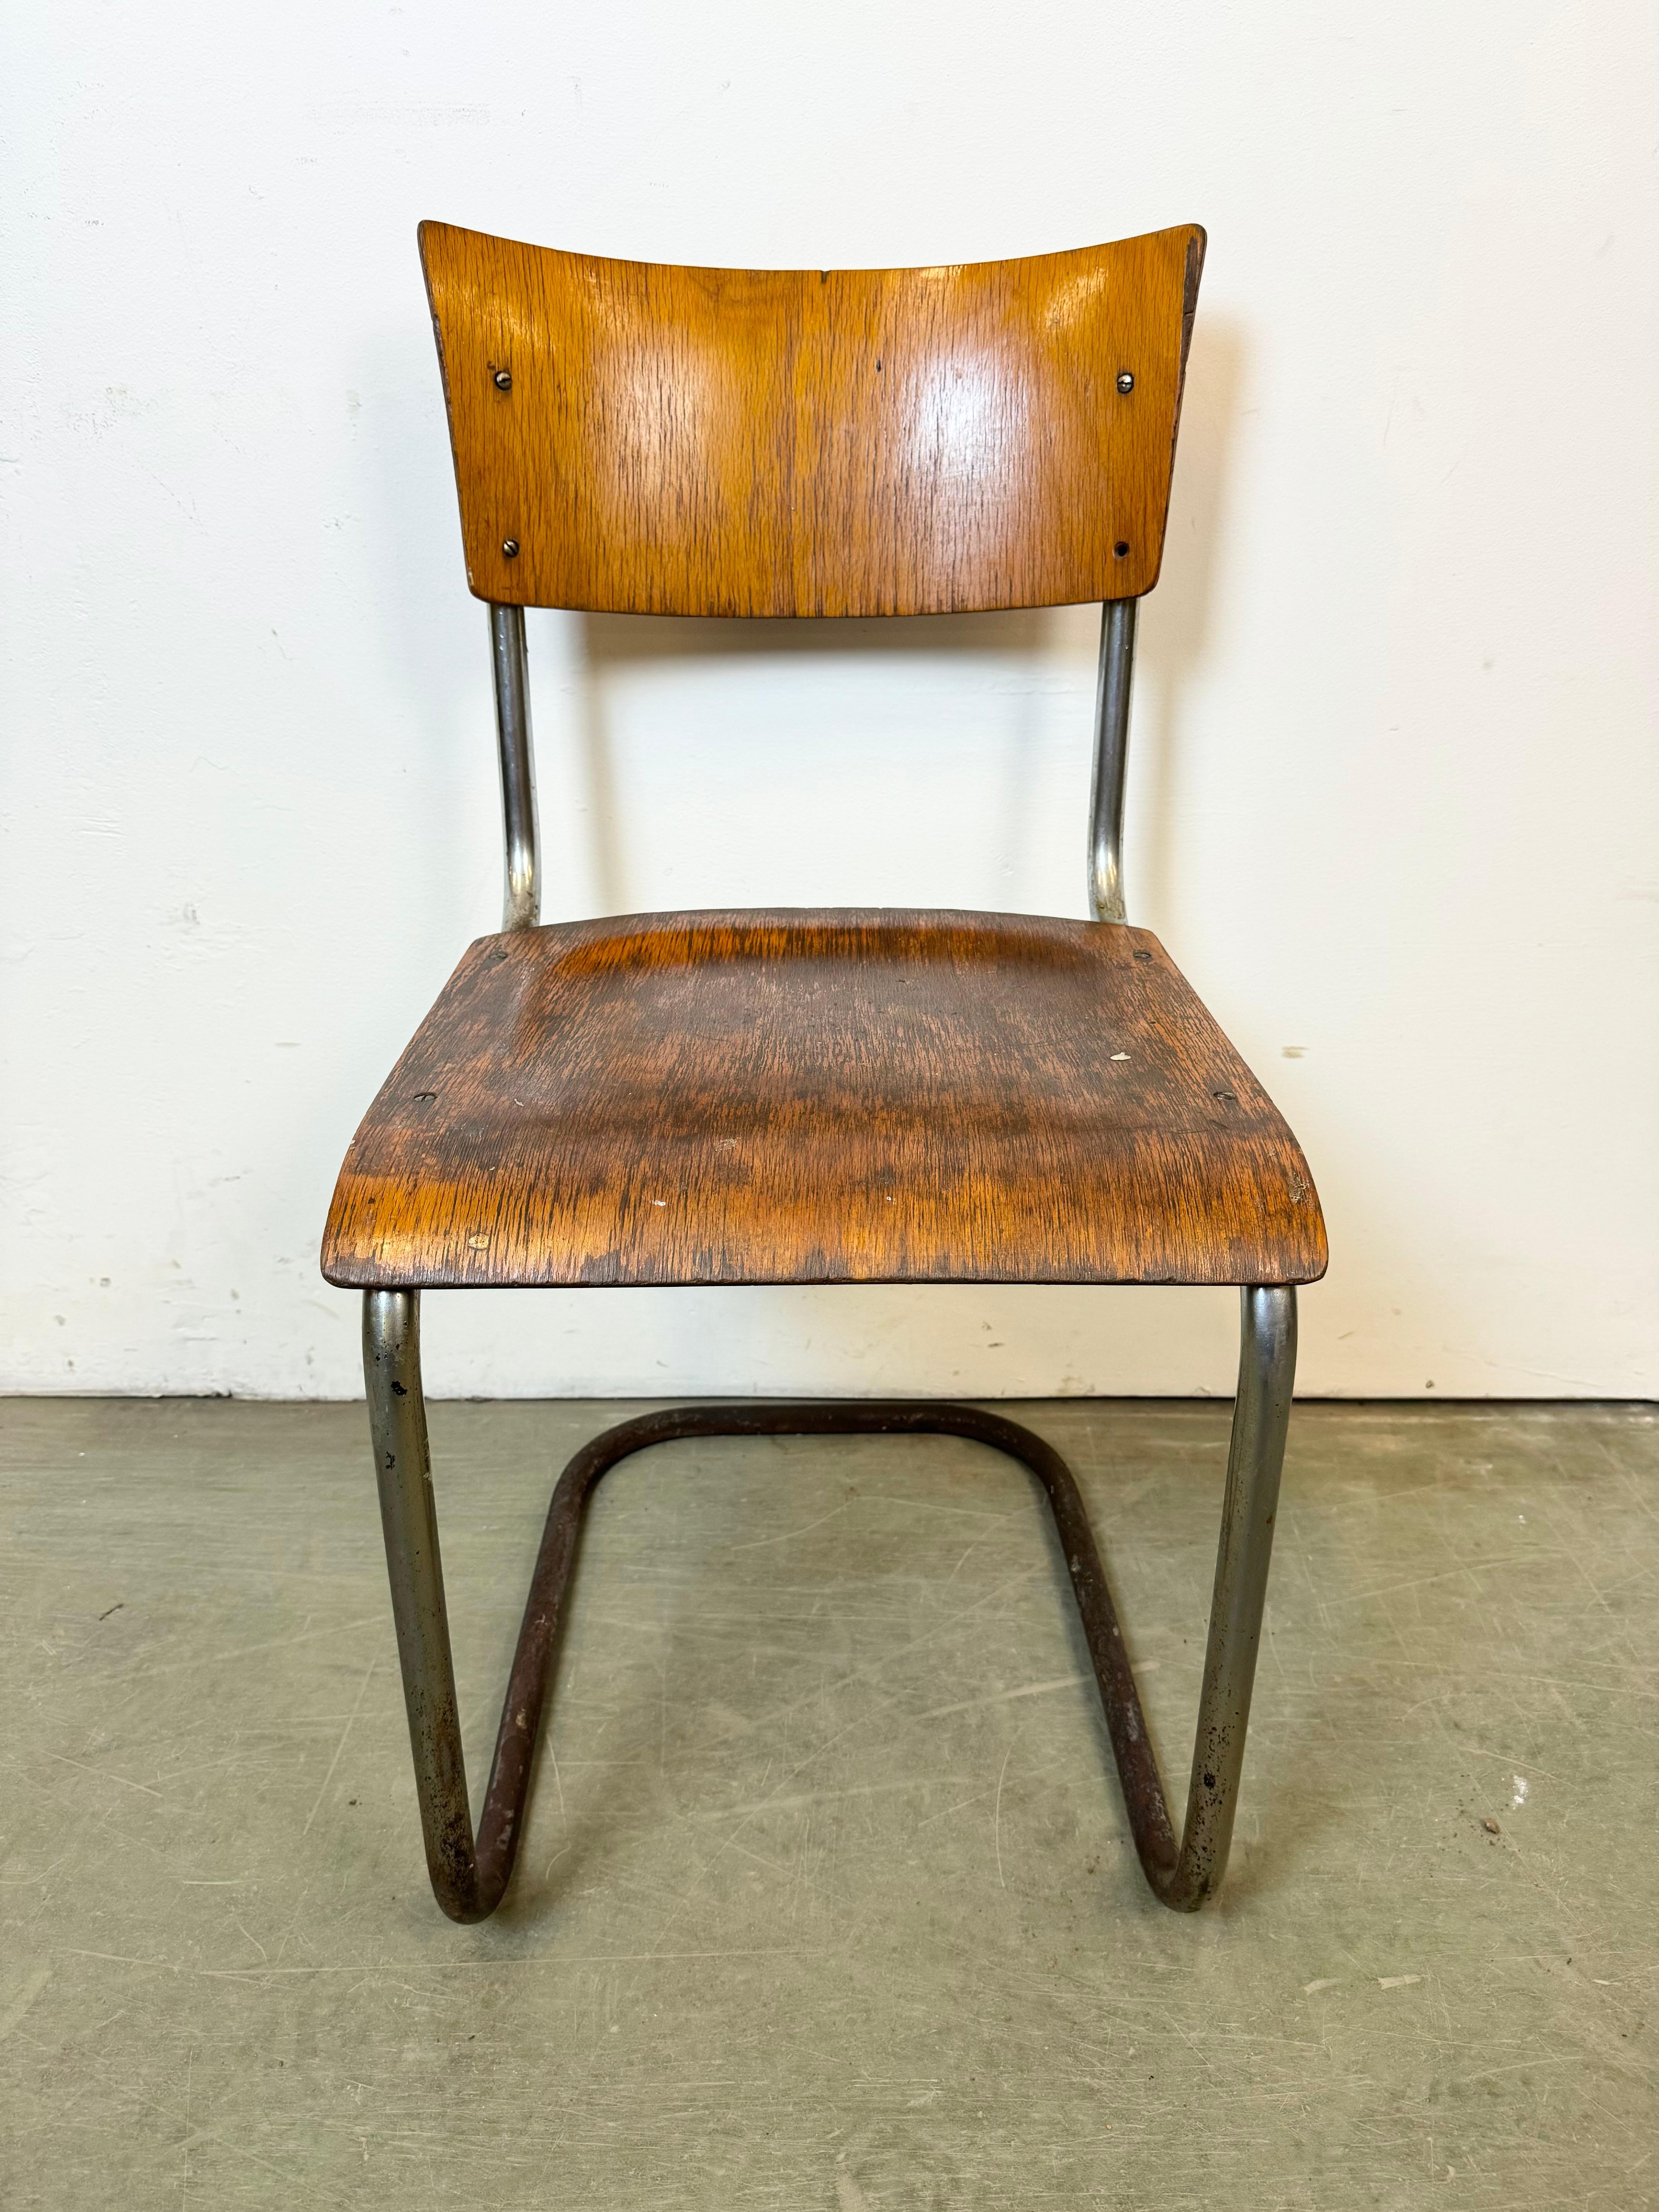 Vintage-Industriestuhl, hergestellt in der ehemaligen Tschechoslowakei in den 1960er Jahren. Die Konstruktion besteht aus verchromtem Eisen, Sitz und Rückenlehne sind aus Sperrholz gefertigt. Das Gewicht des Stuhls beträgt 5 kg.
